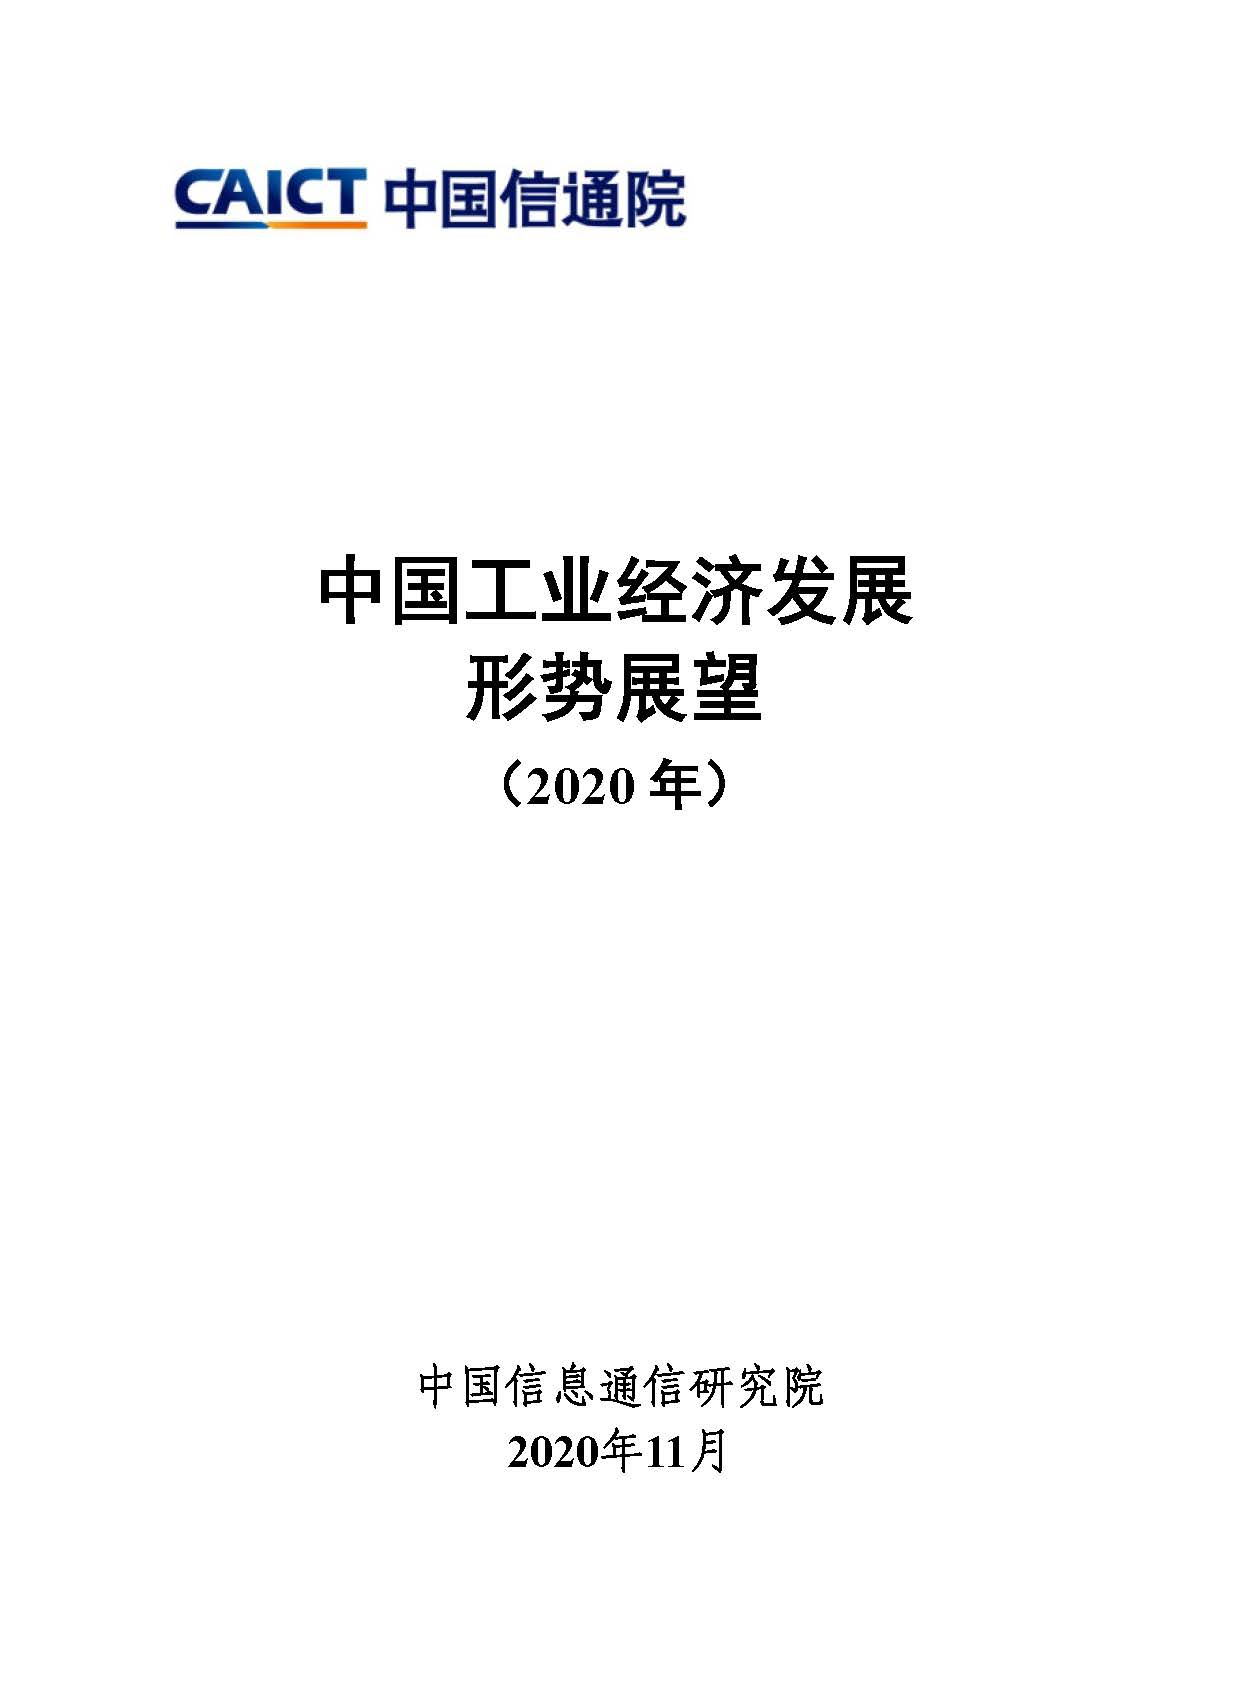 中国工业经济发展形势展望（2020年）首页.jpg